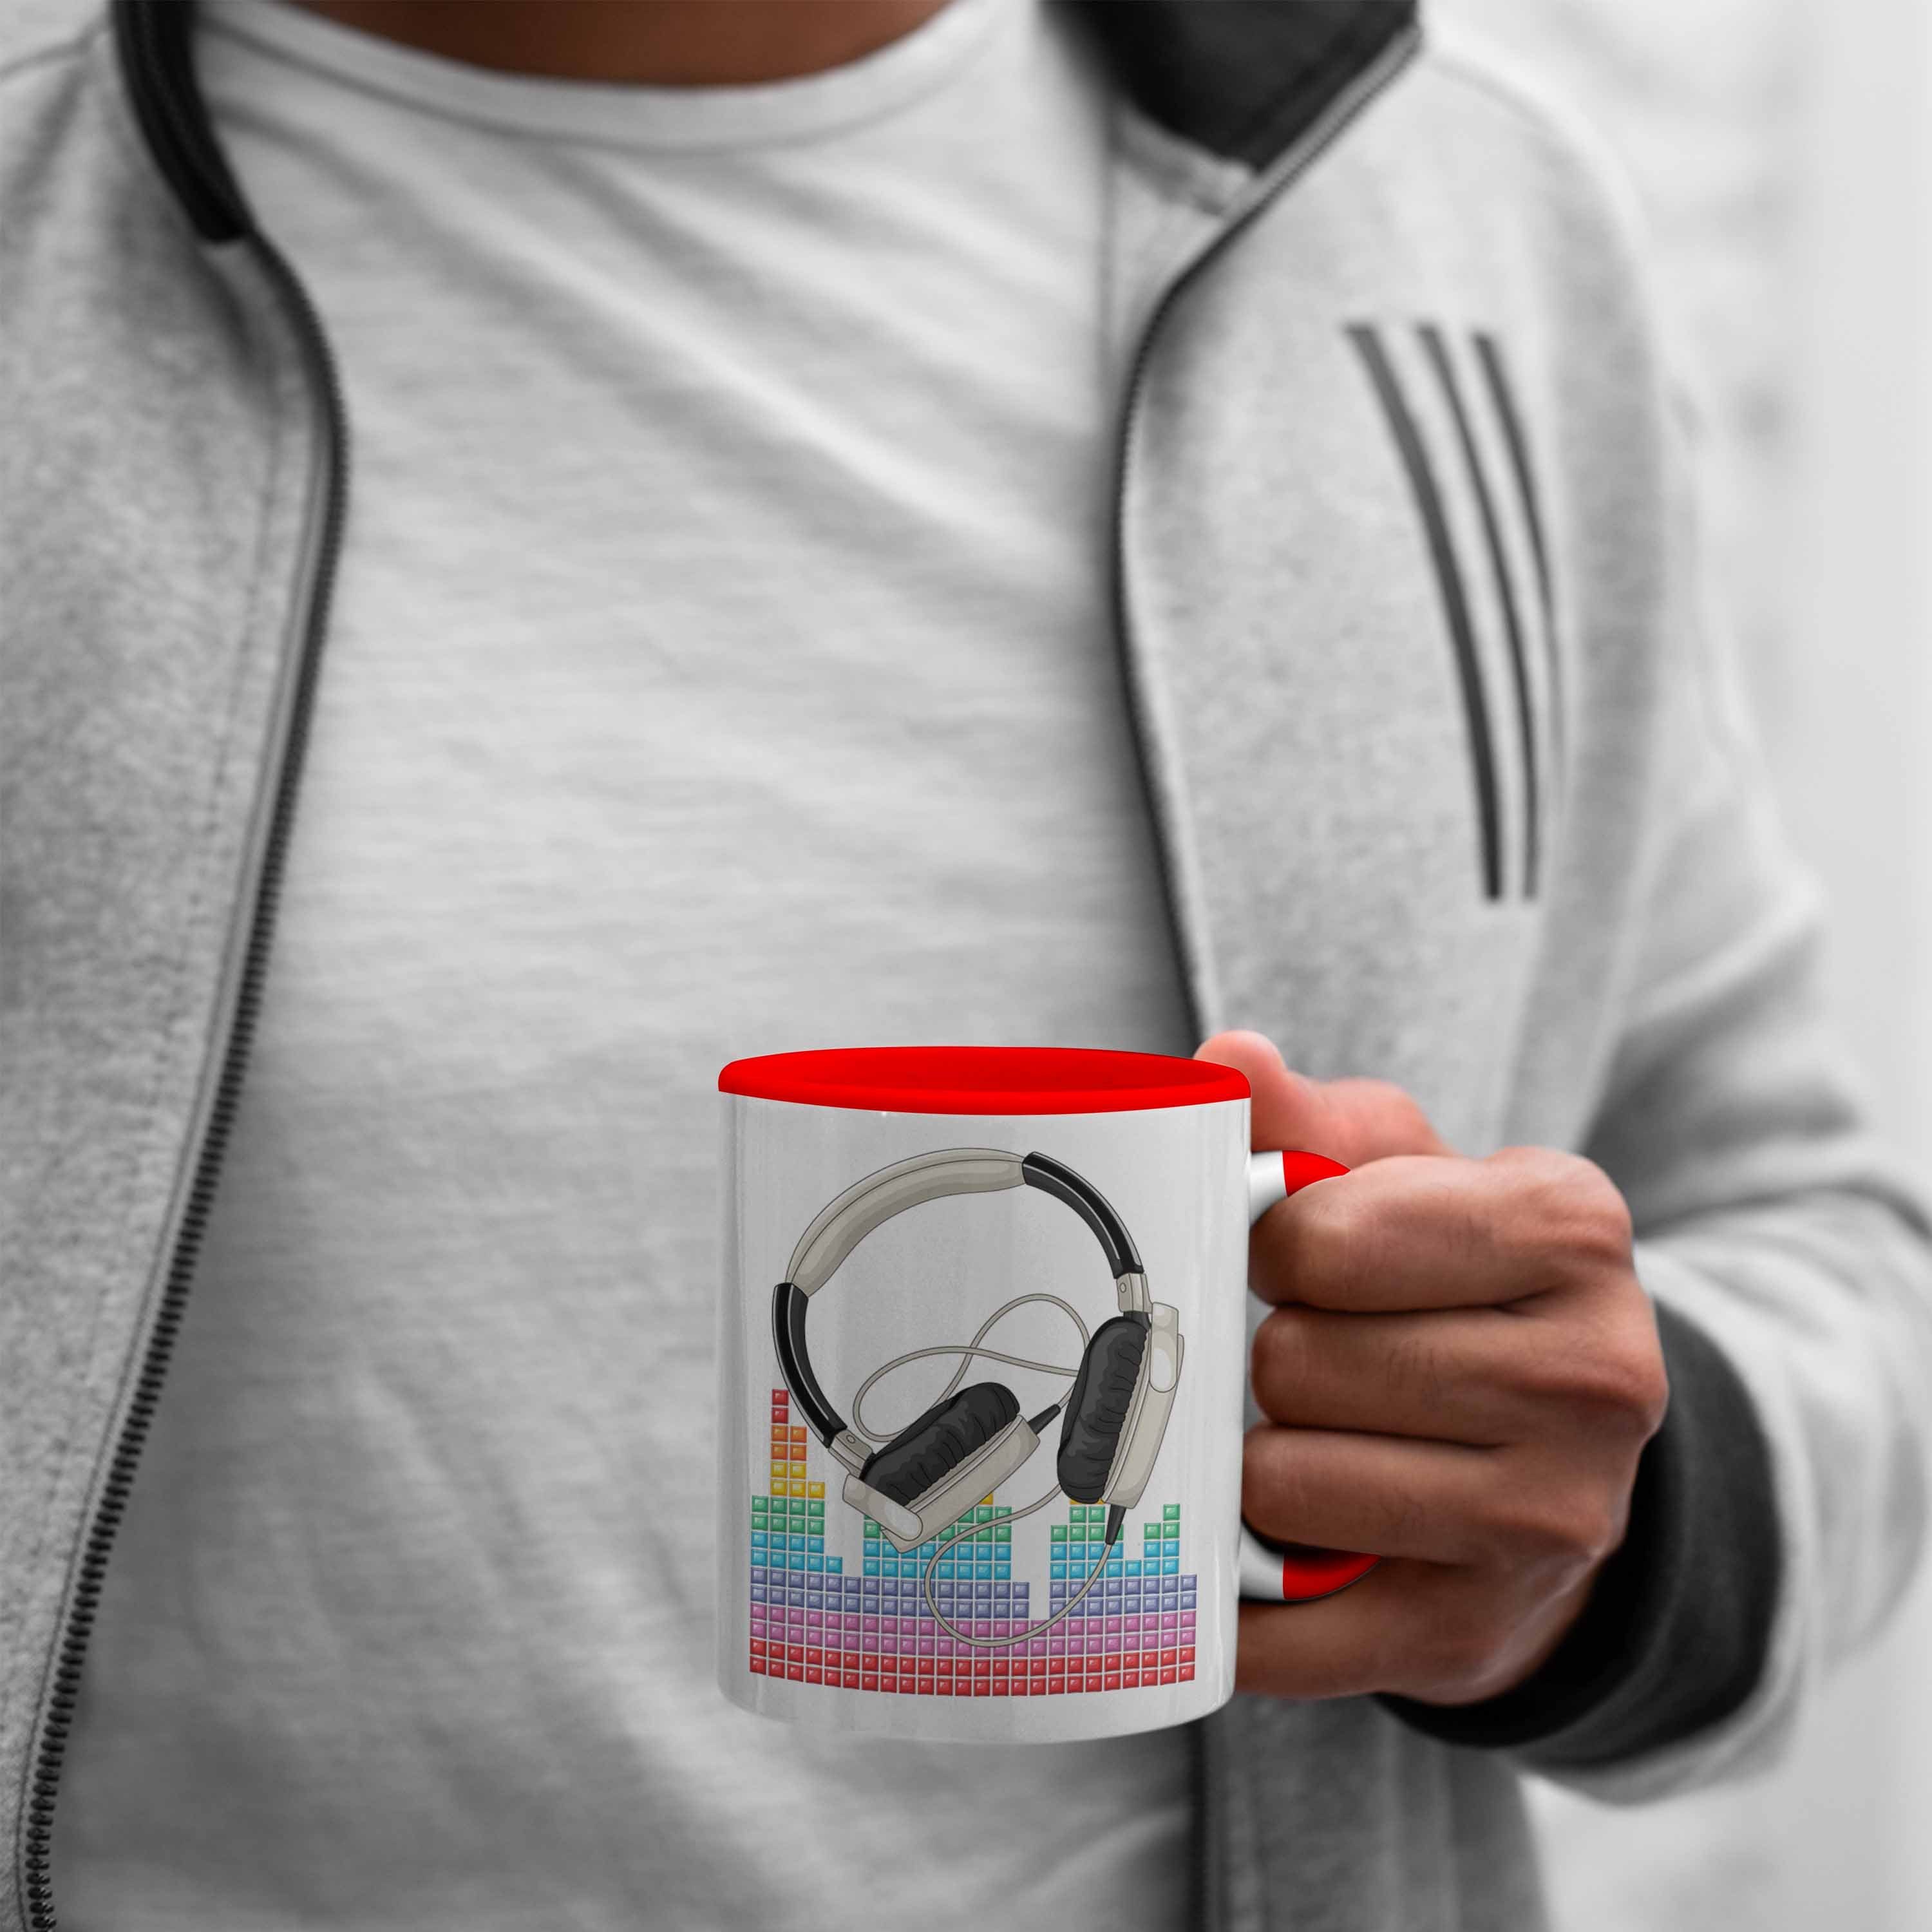 DJ Tasse DJ Geschenkidee Geschenk Trendation Kaffee-Becher Tasse Rot für Mischpult Grafik